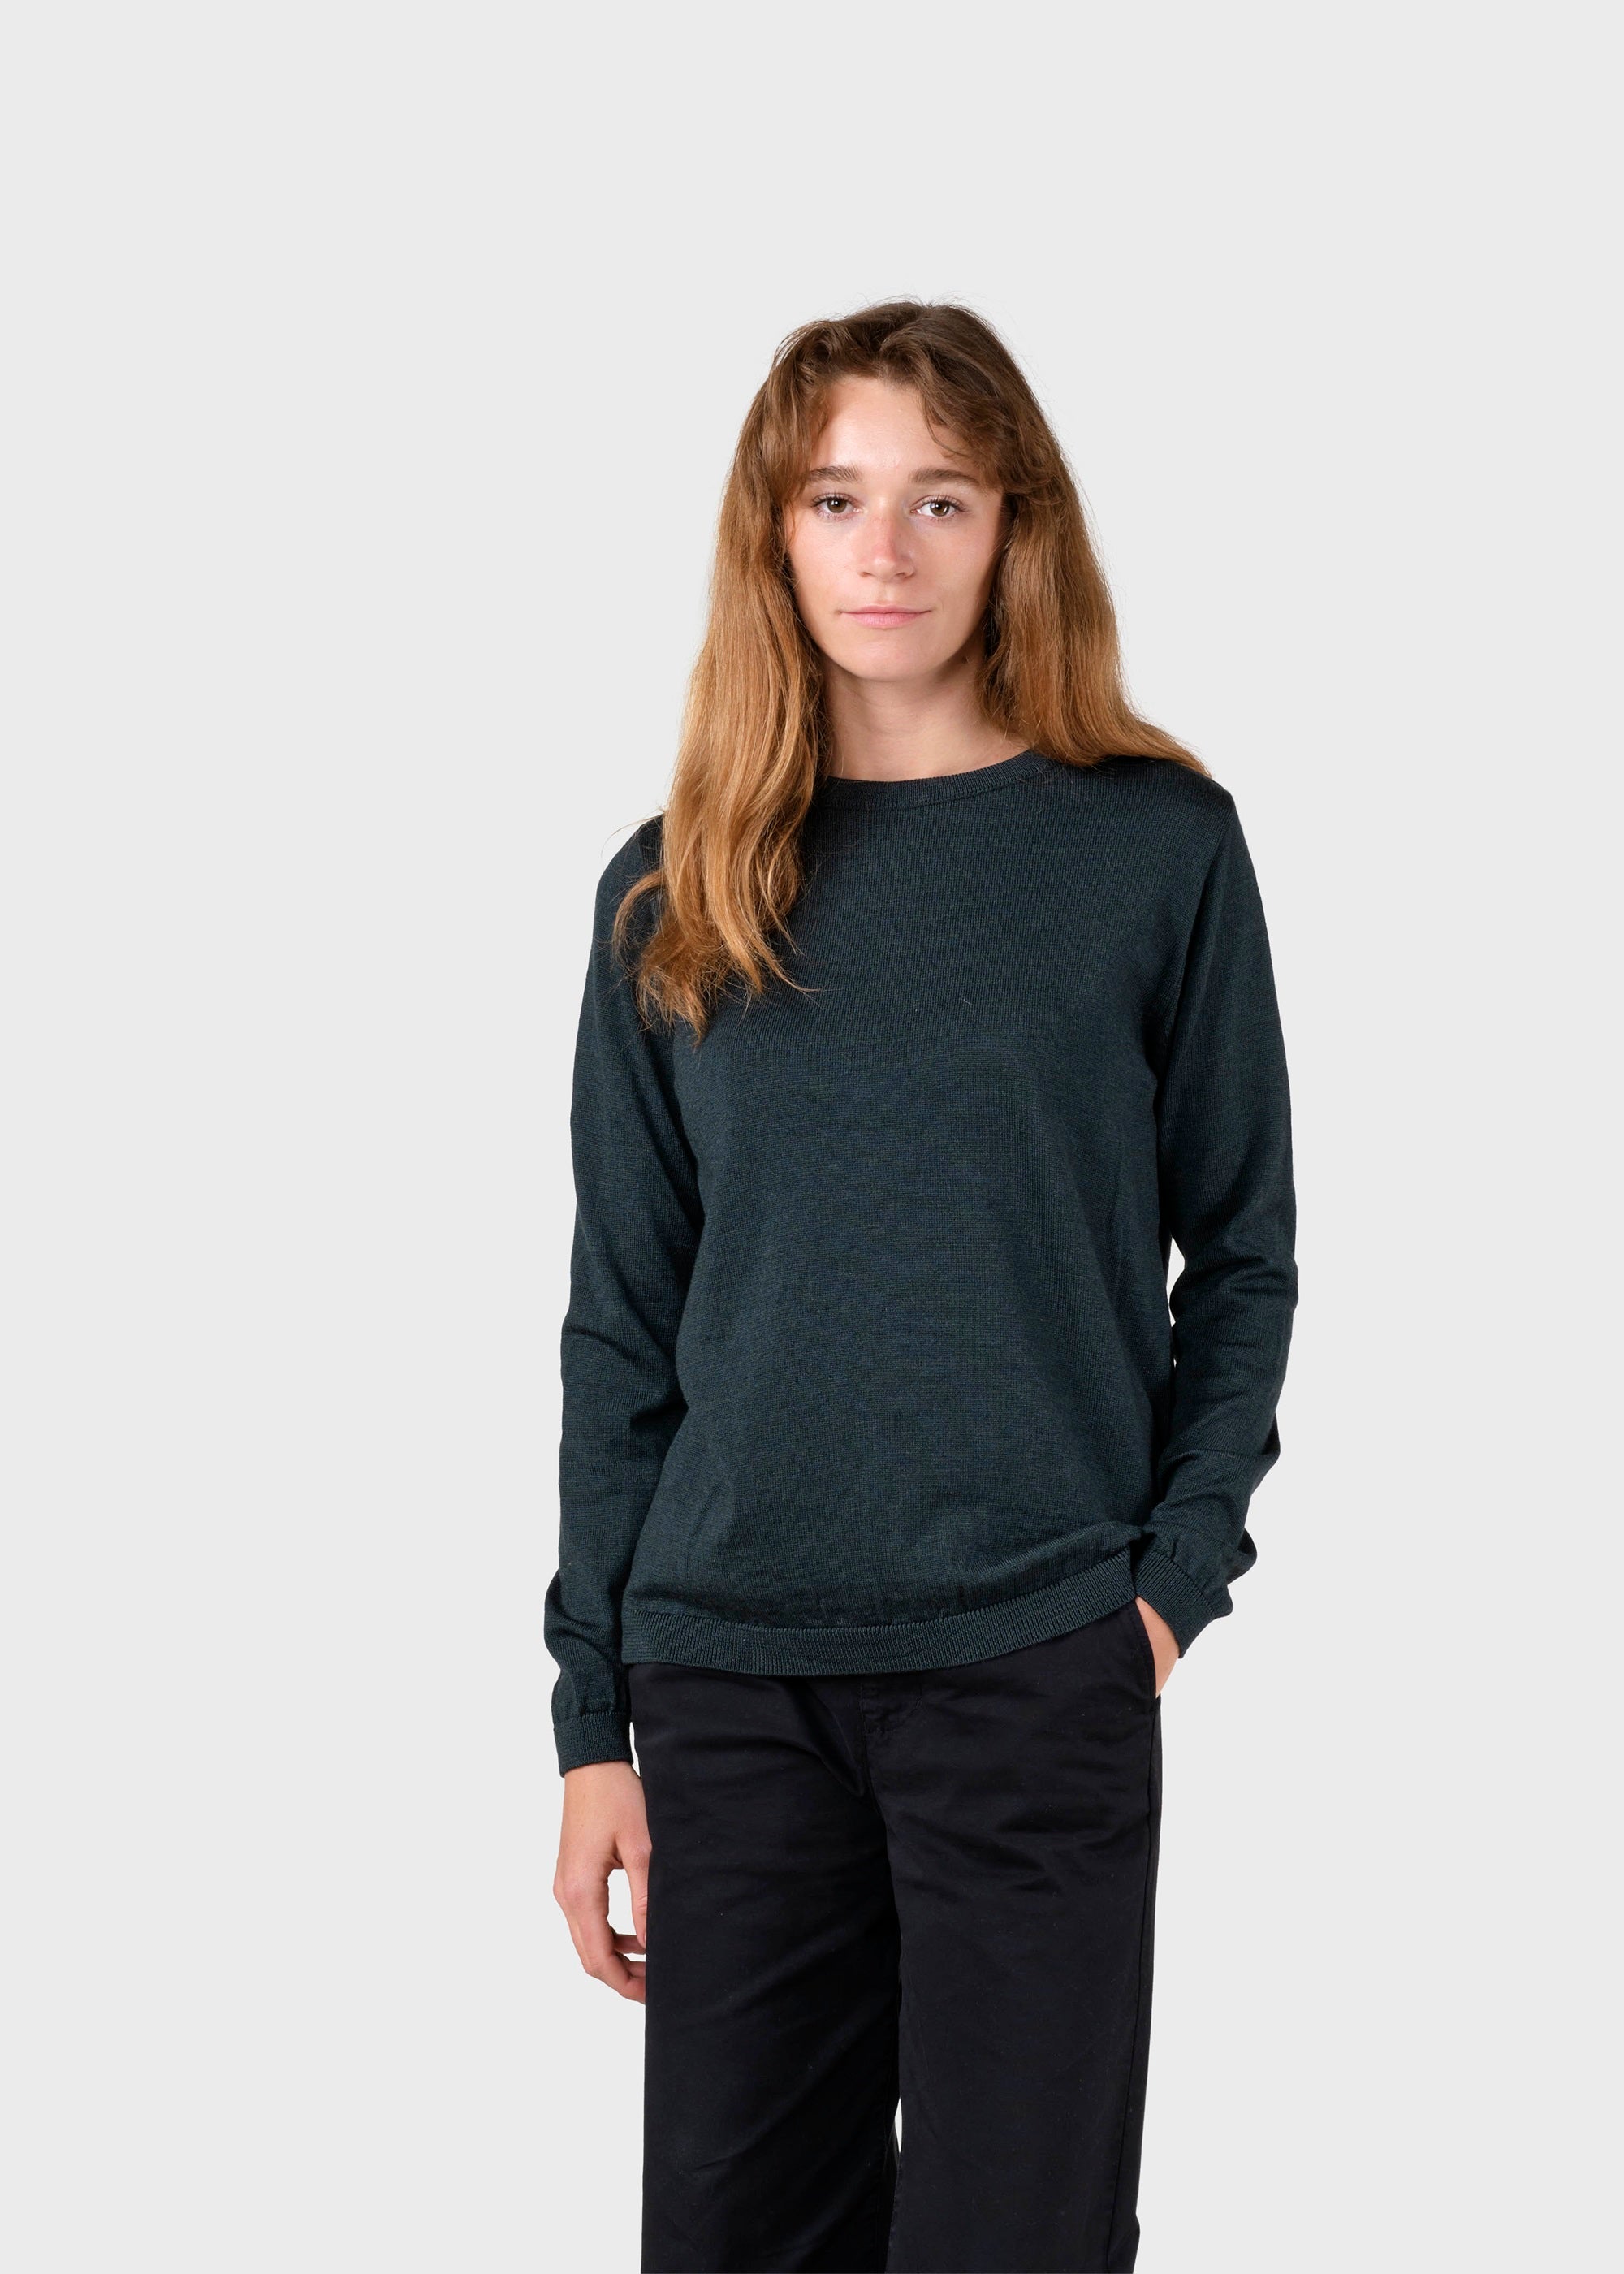 Women's thin Merino Wool Sweater Olive Green